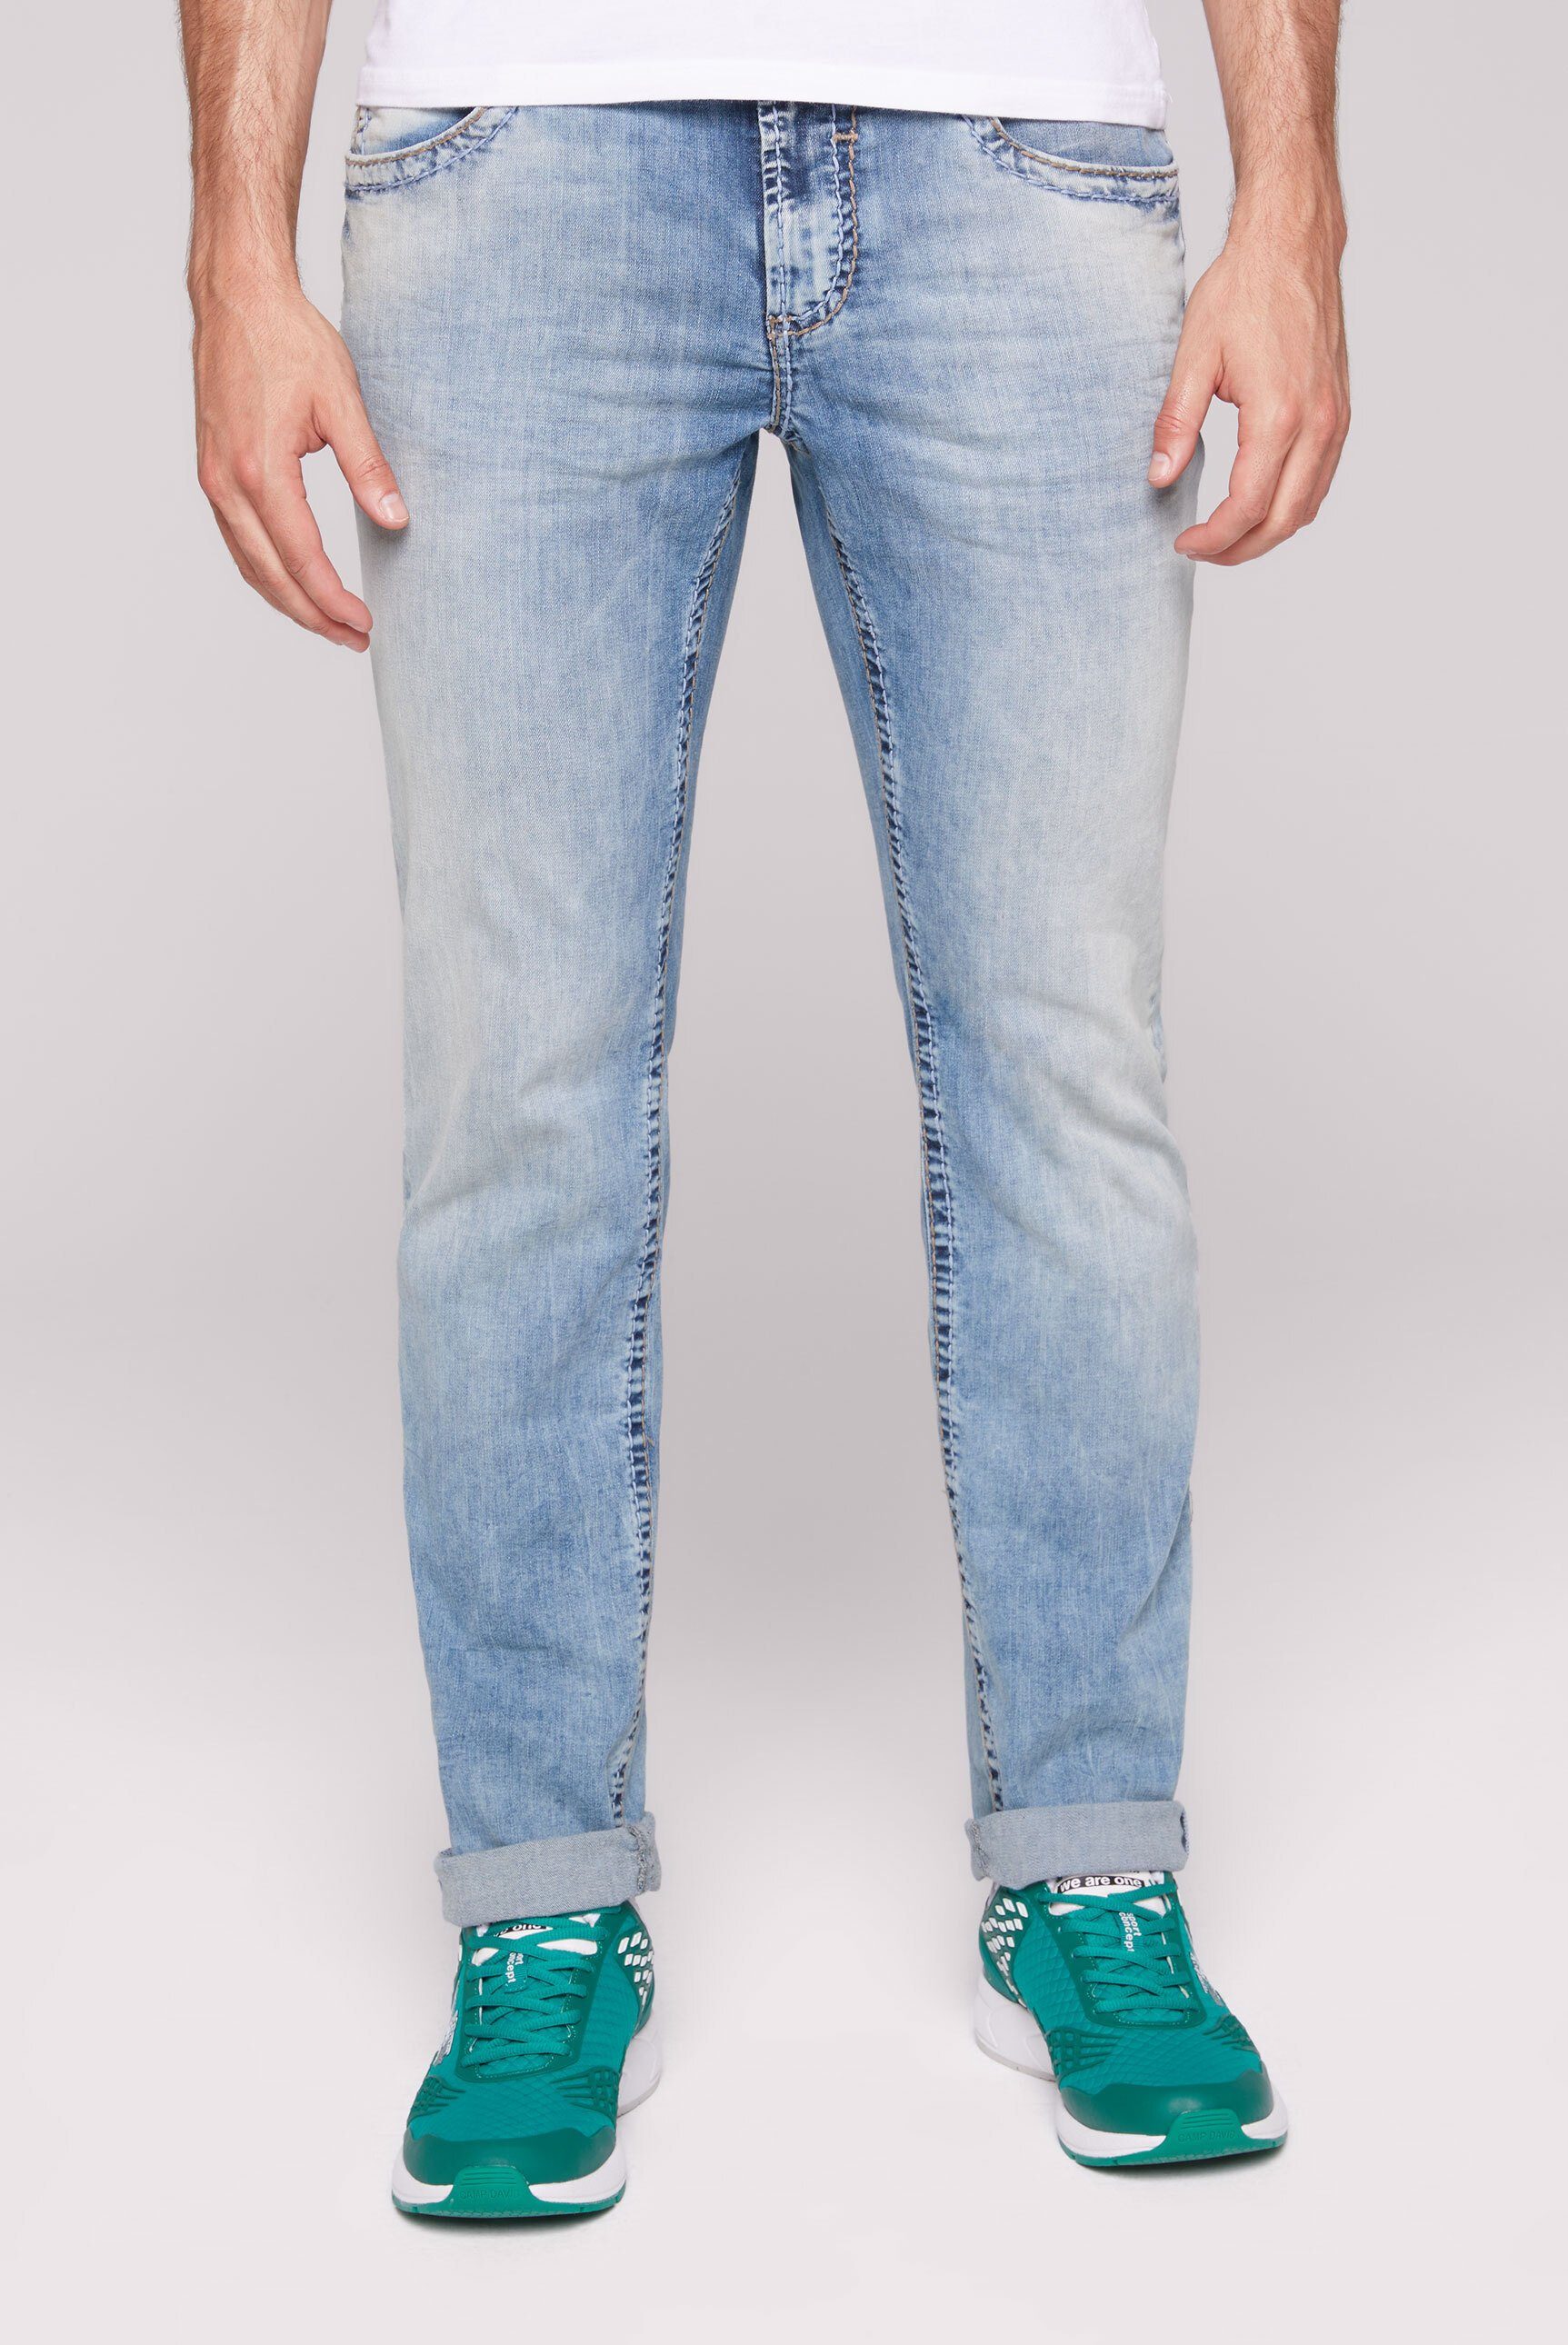 CAMP DAVID Regular-fit-Jeans mit breiten Nähten, Praktischer Reißverschluss